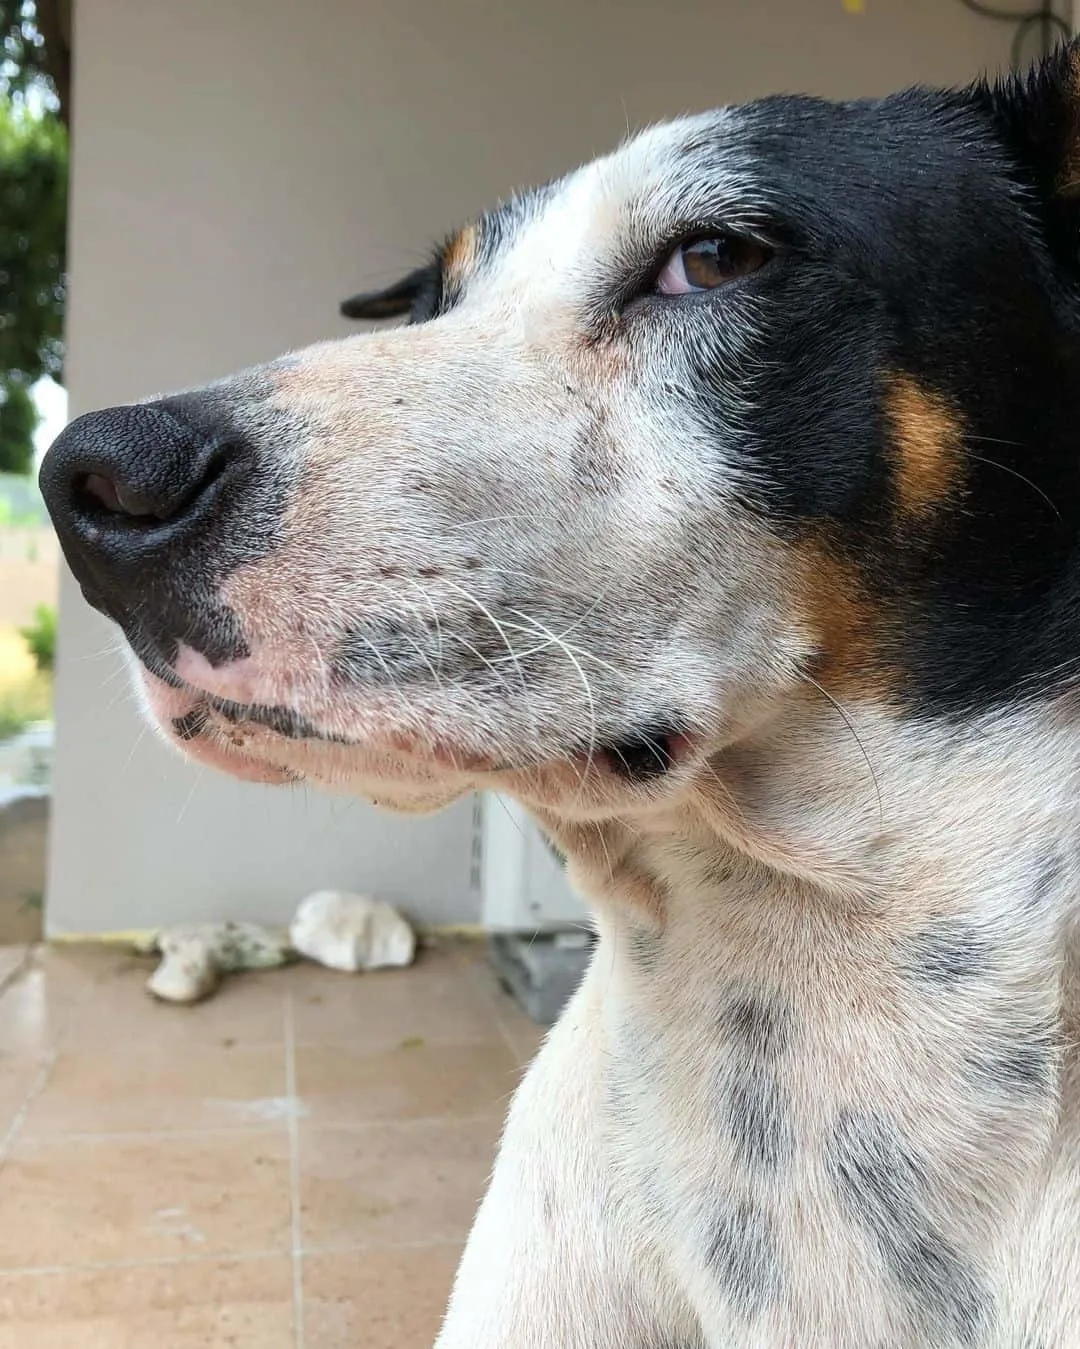 sassy dog giving side eye